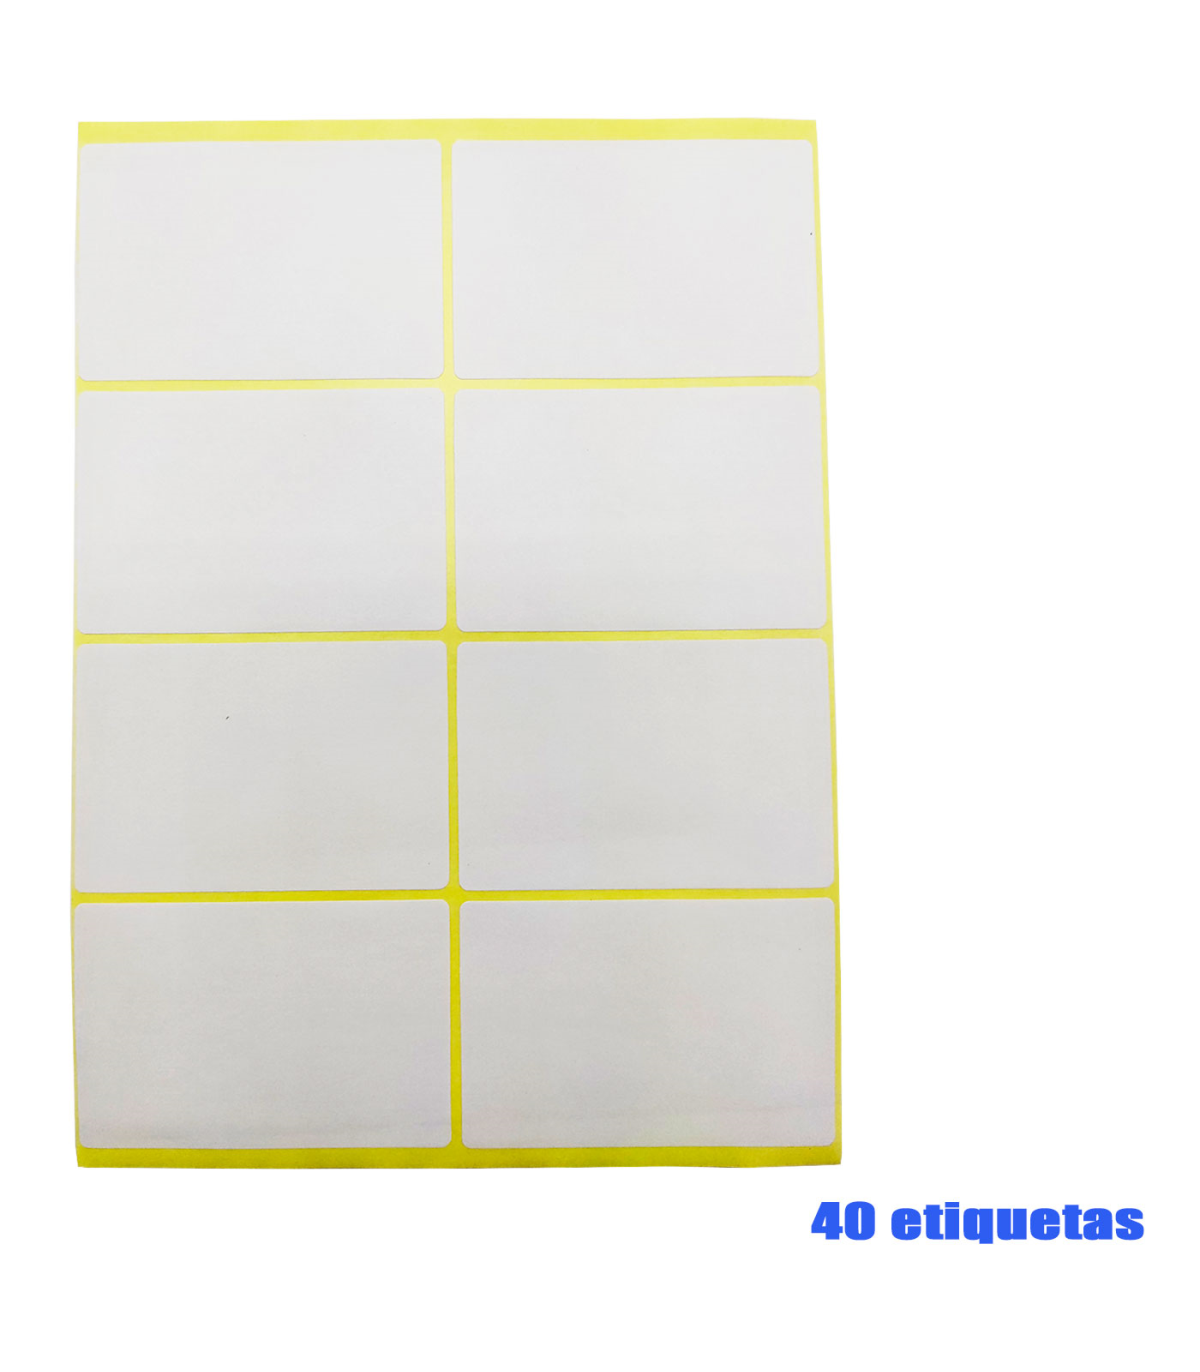 Tradineur - de 40 etiquetas E11, pegatinas auto-adhesivas para objetos, hogar, oficina, 50 x 75 mm